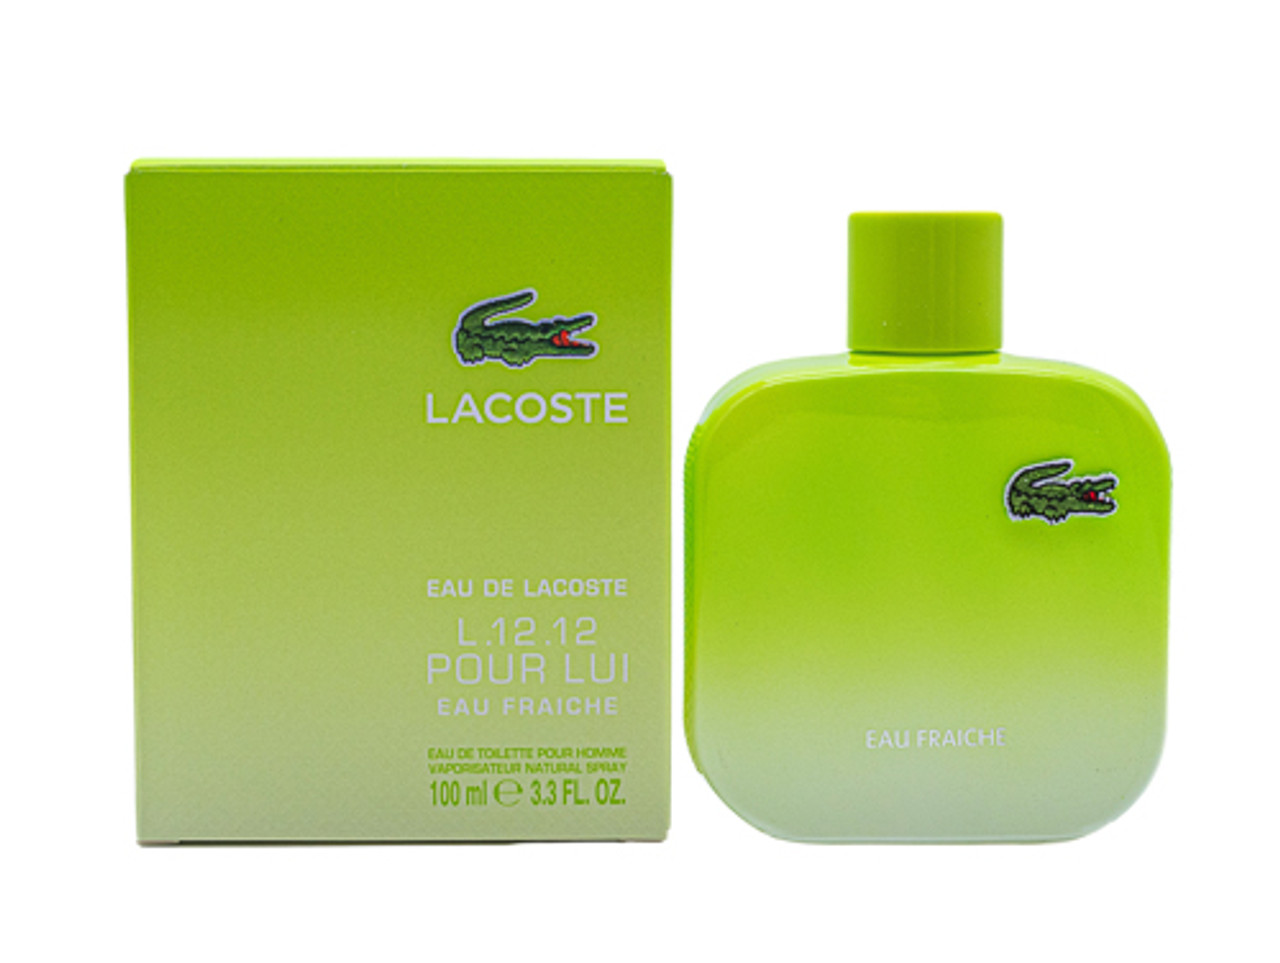 Classic Perfume Parfum Eau Fraiche Eau de Toilette Natural Spray 100ml NEW